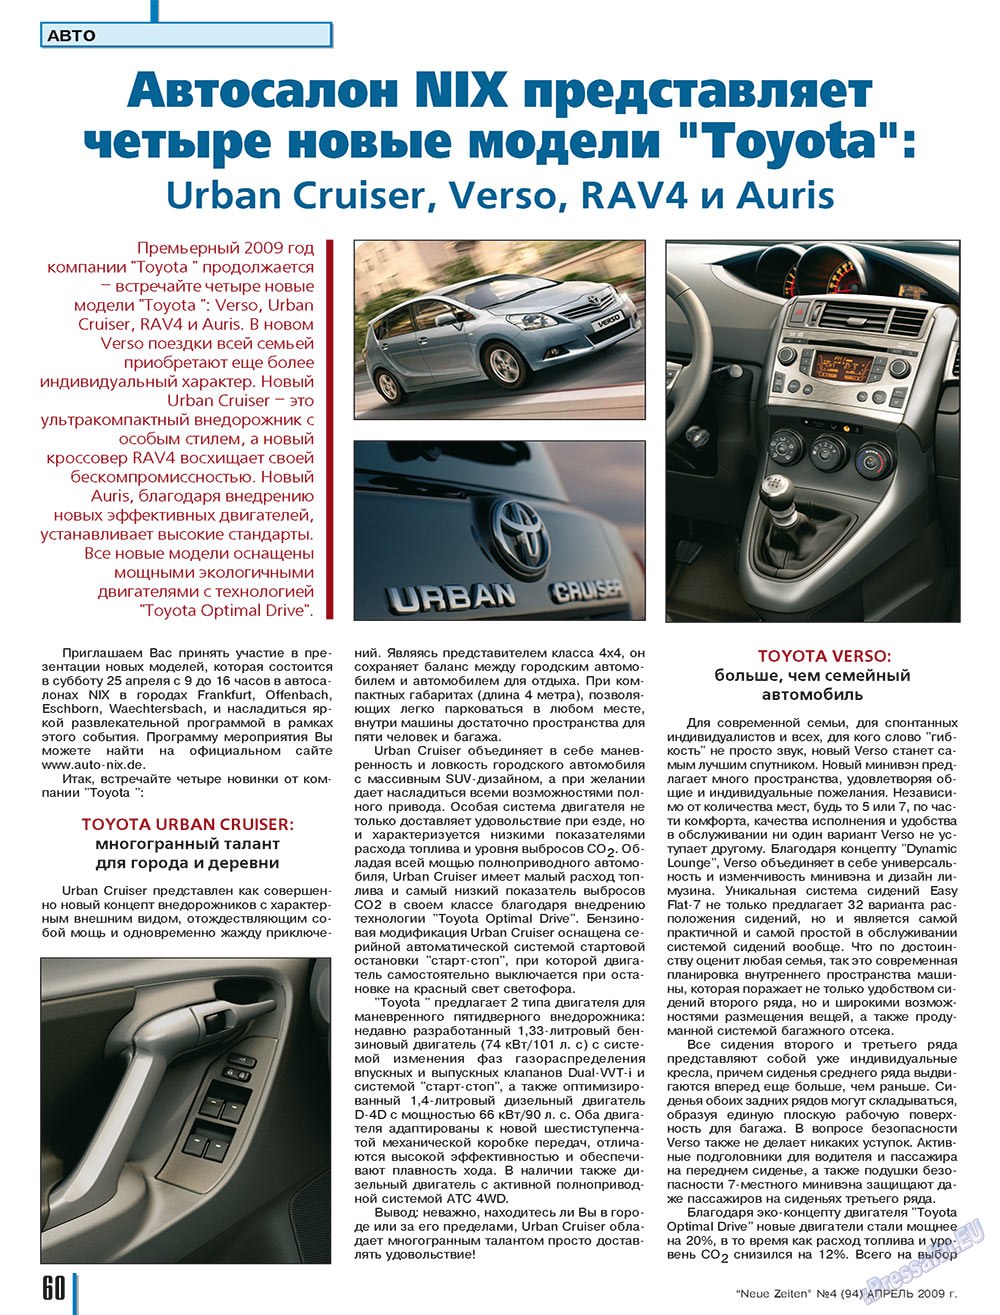 Neue Zeiten, журнал. 2009 №4 стр.60